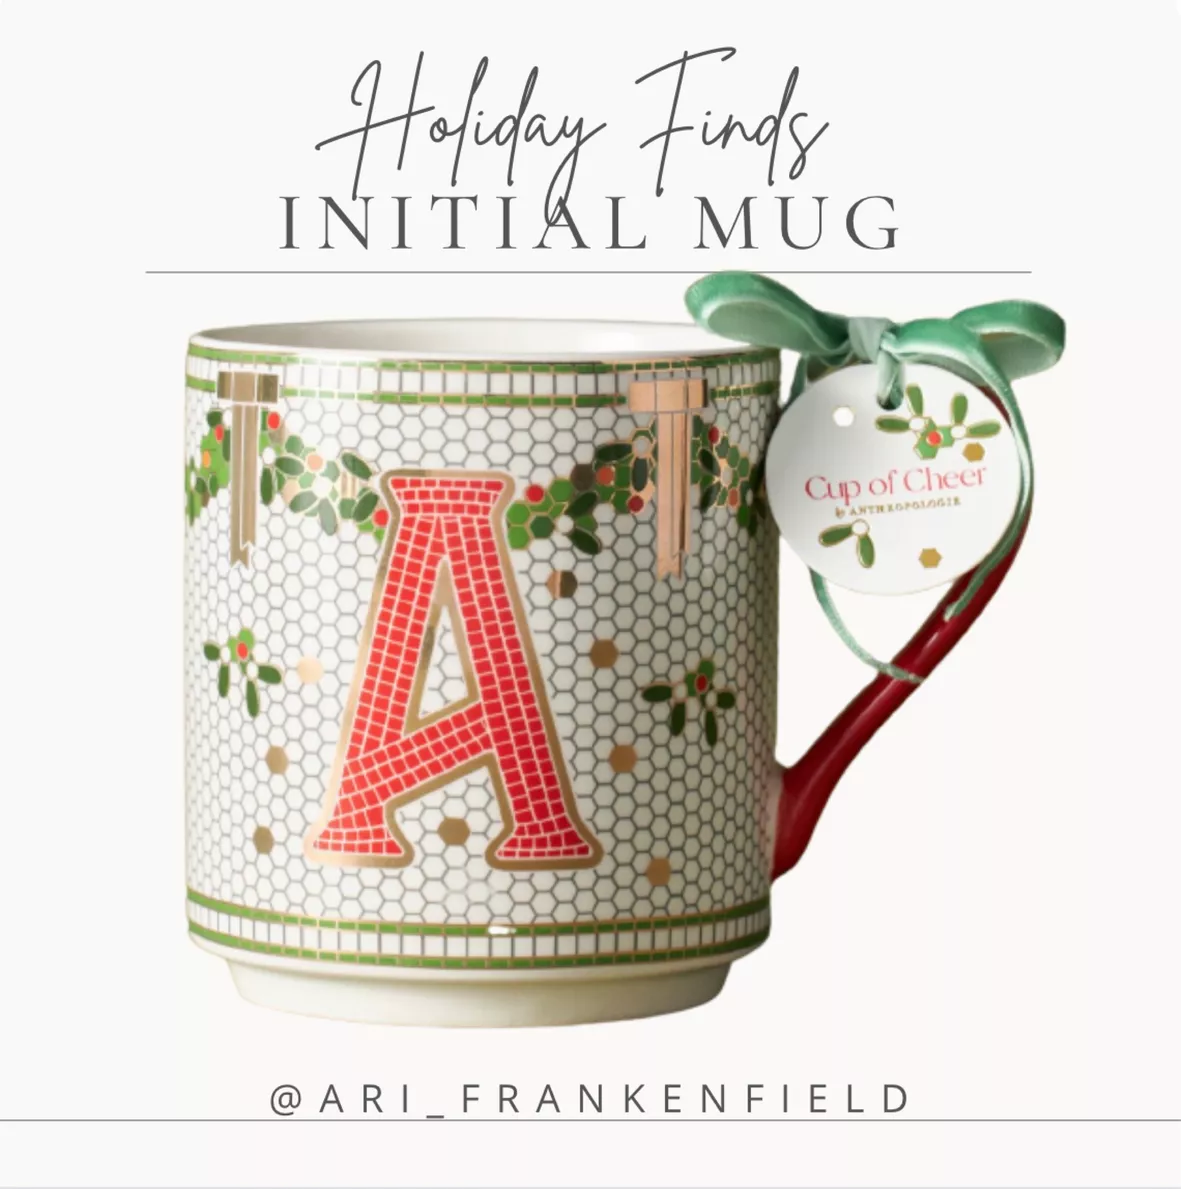 Holiday Mega Mug (40oz) – HighlandSide Interiors, Gifts and Monogramming